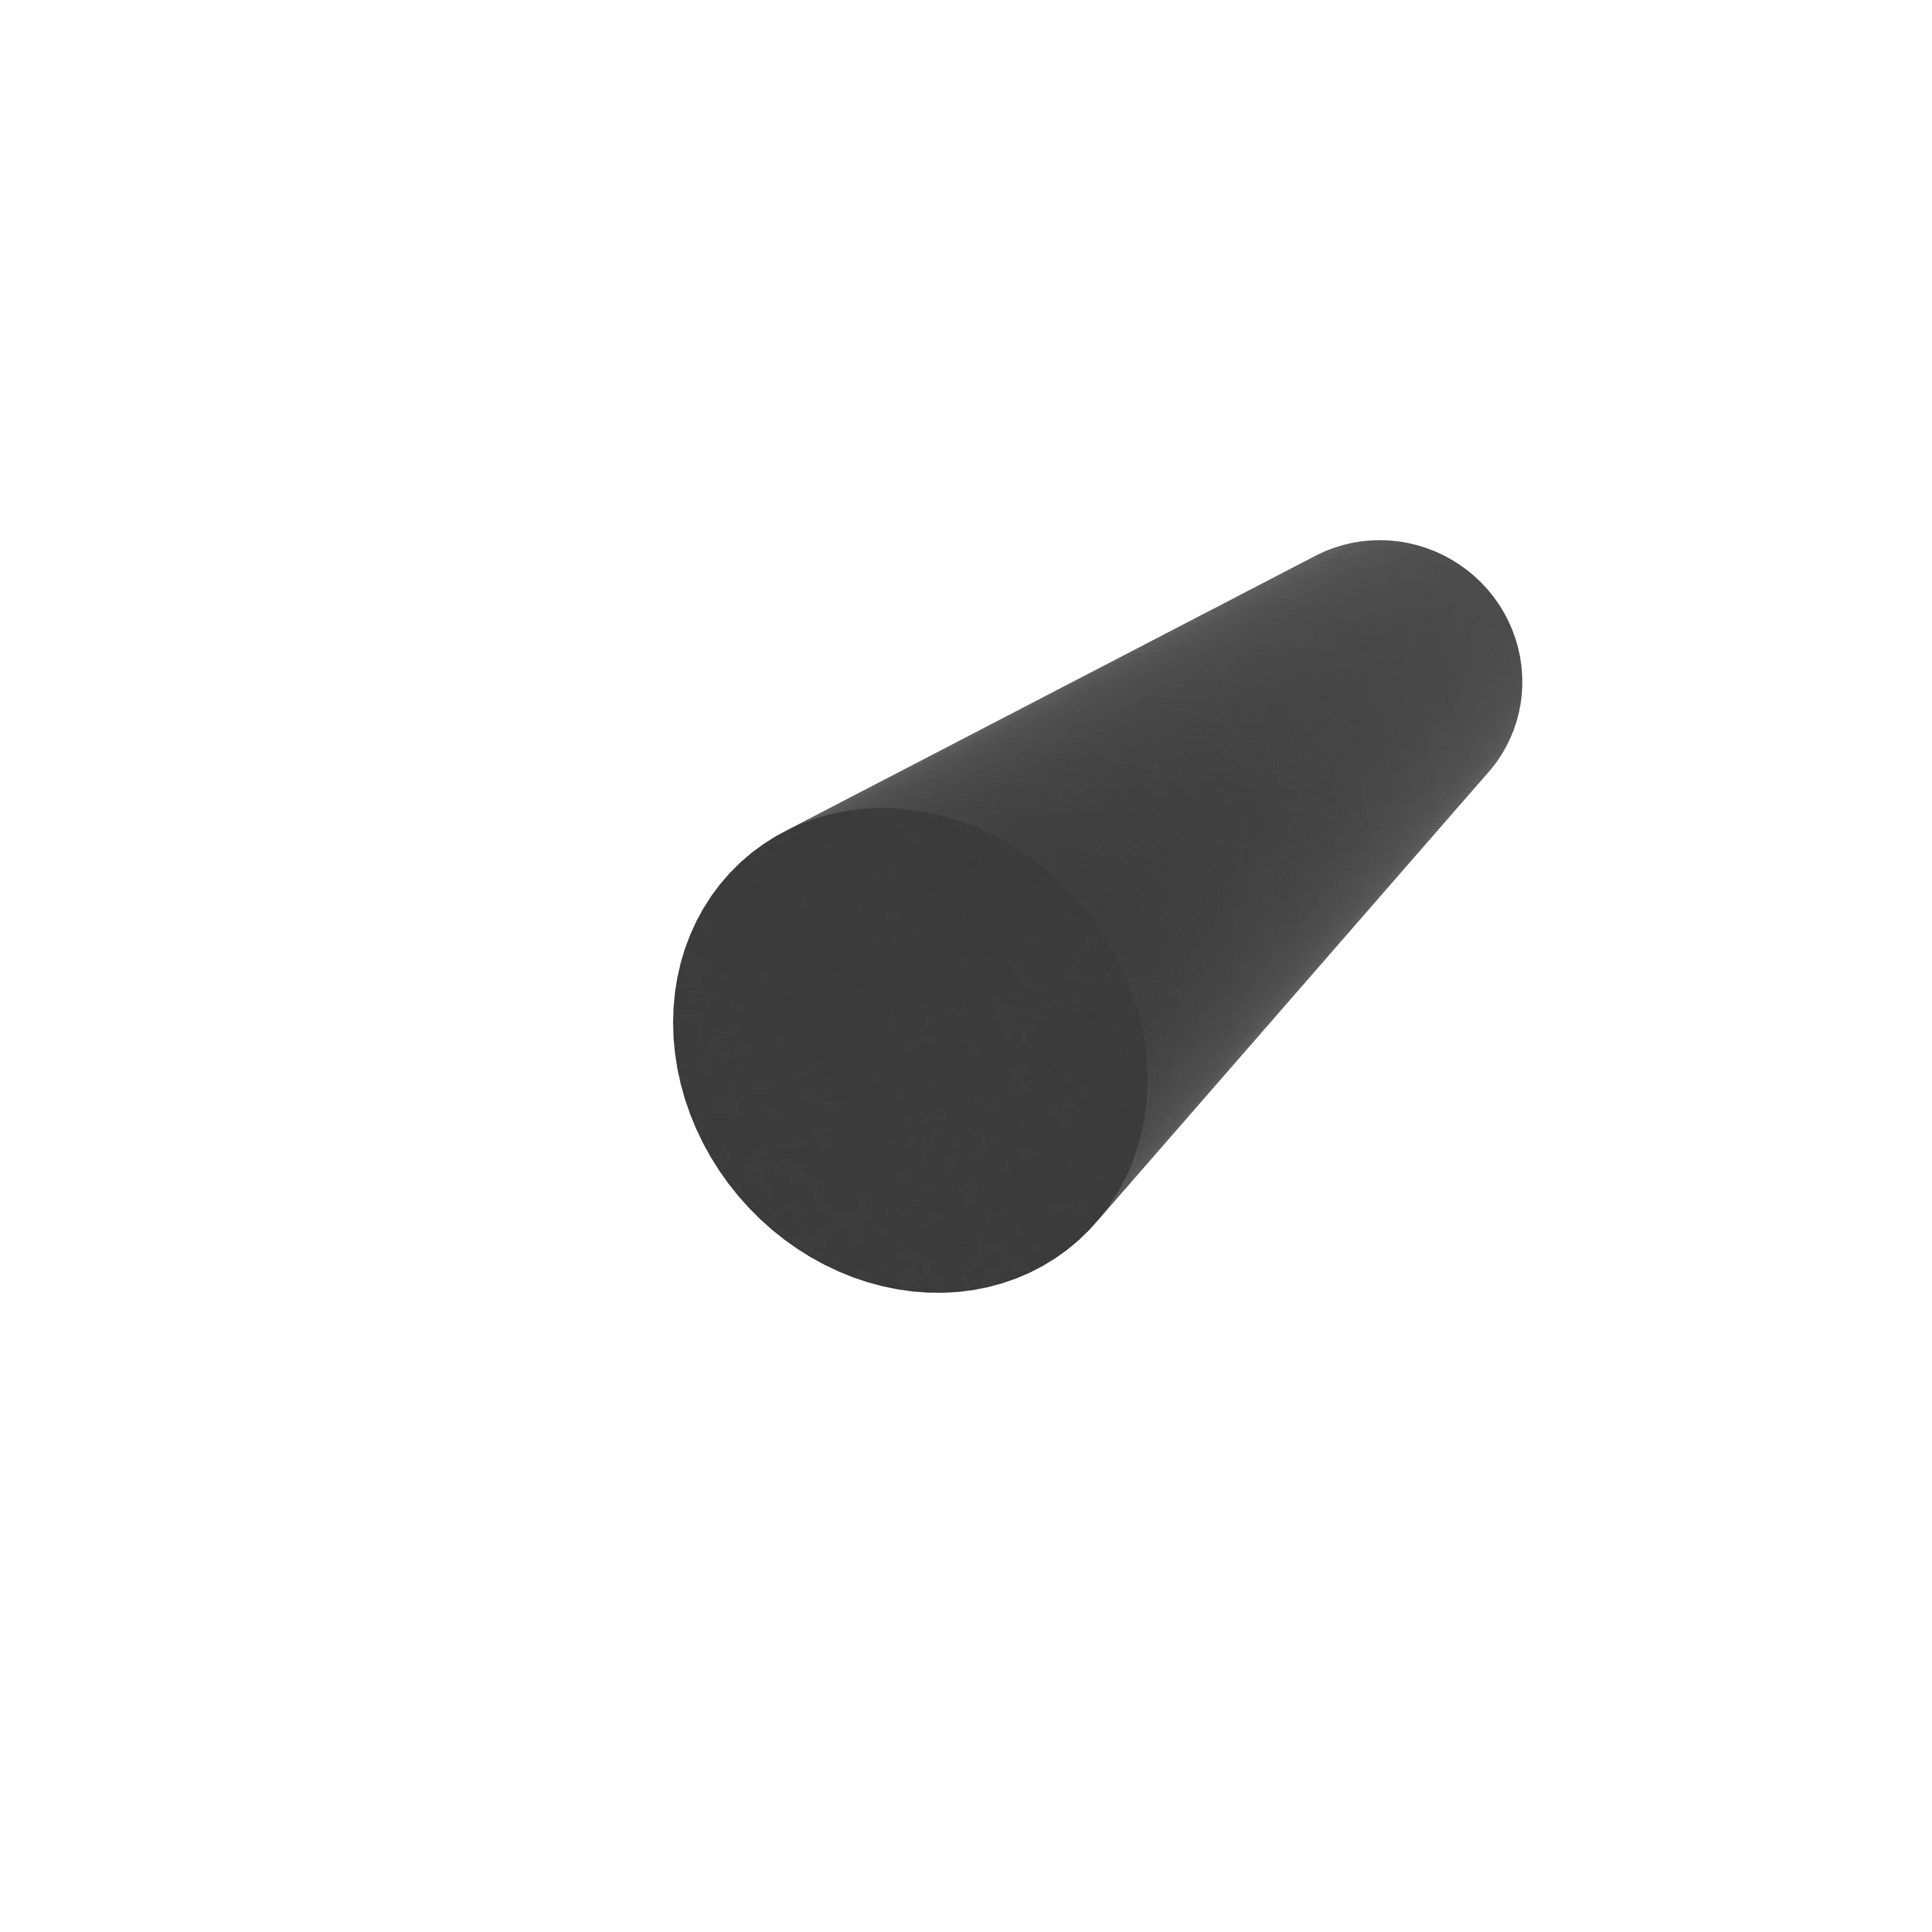 Moosgummidichtung rund | 6 mm Durchmesser | Farbe: schwarz